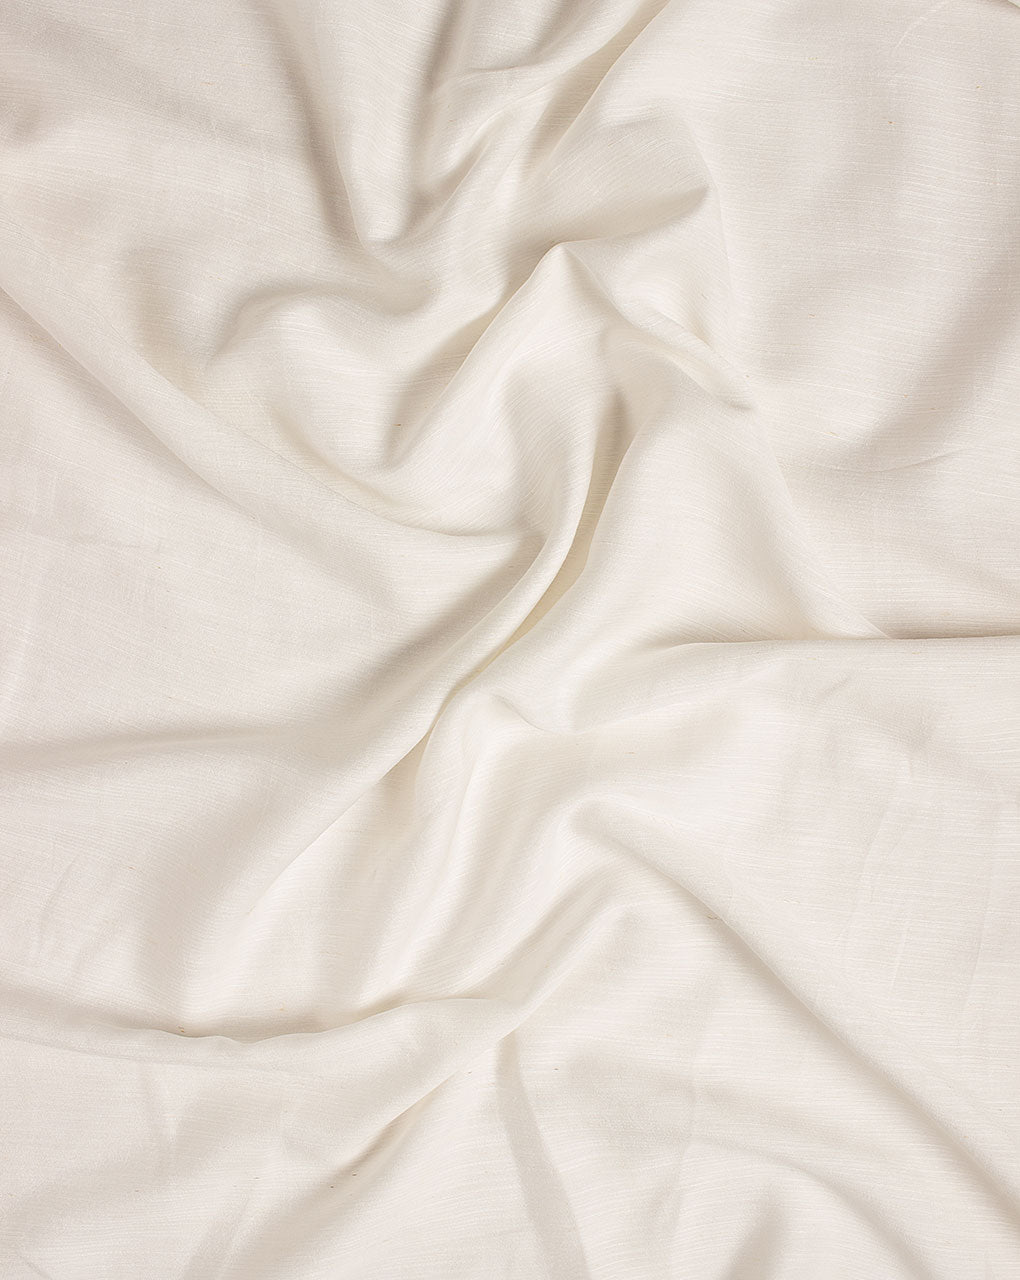 Dyeable Liva Viscose Excel Linen ( Linen Silk K ) Fabric - Fabriclore.com